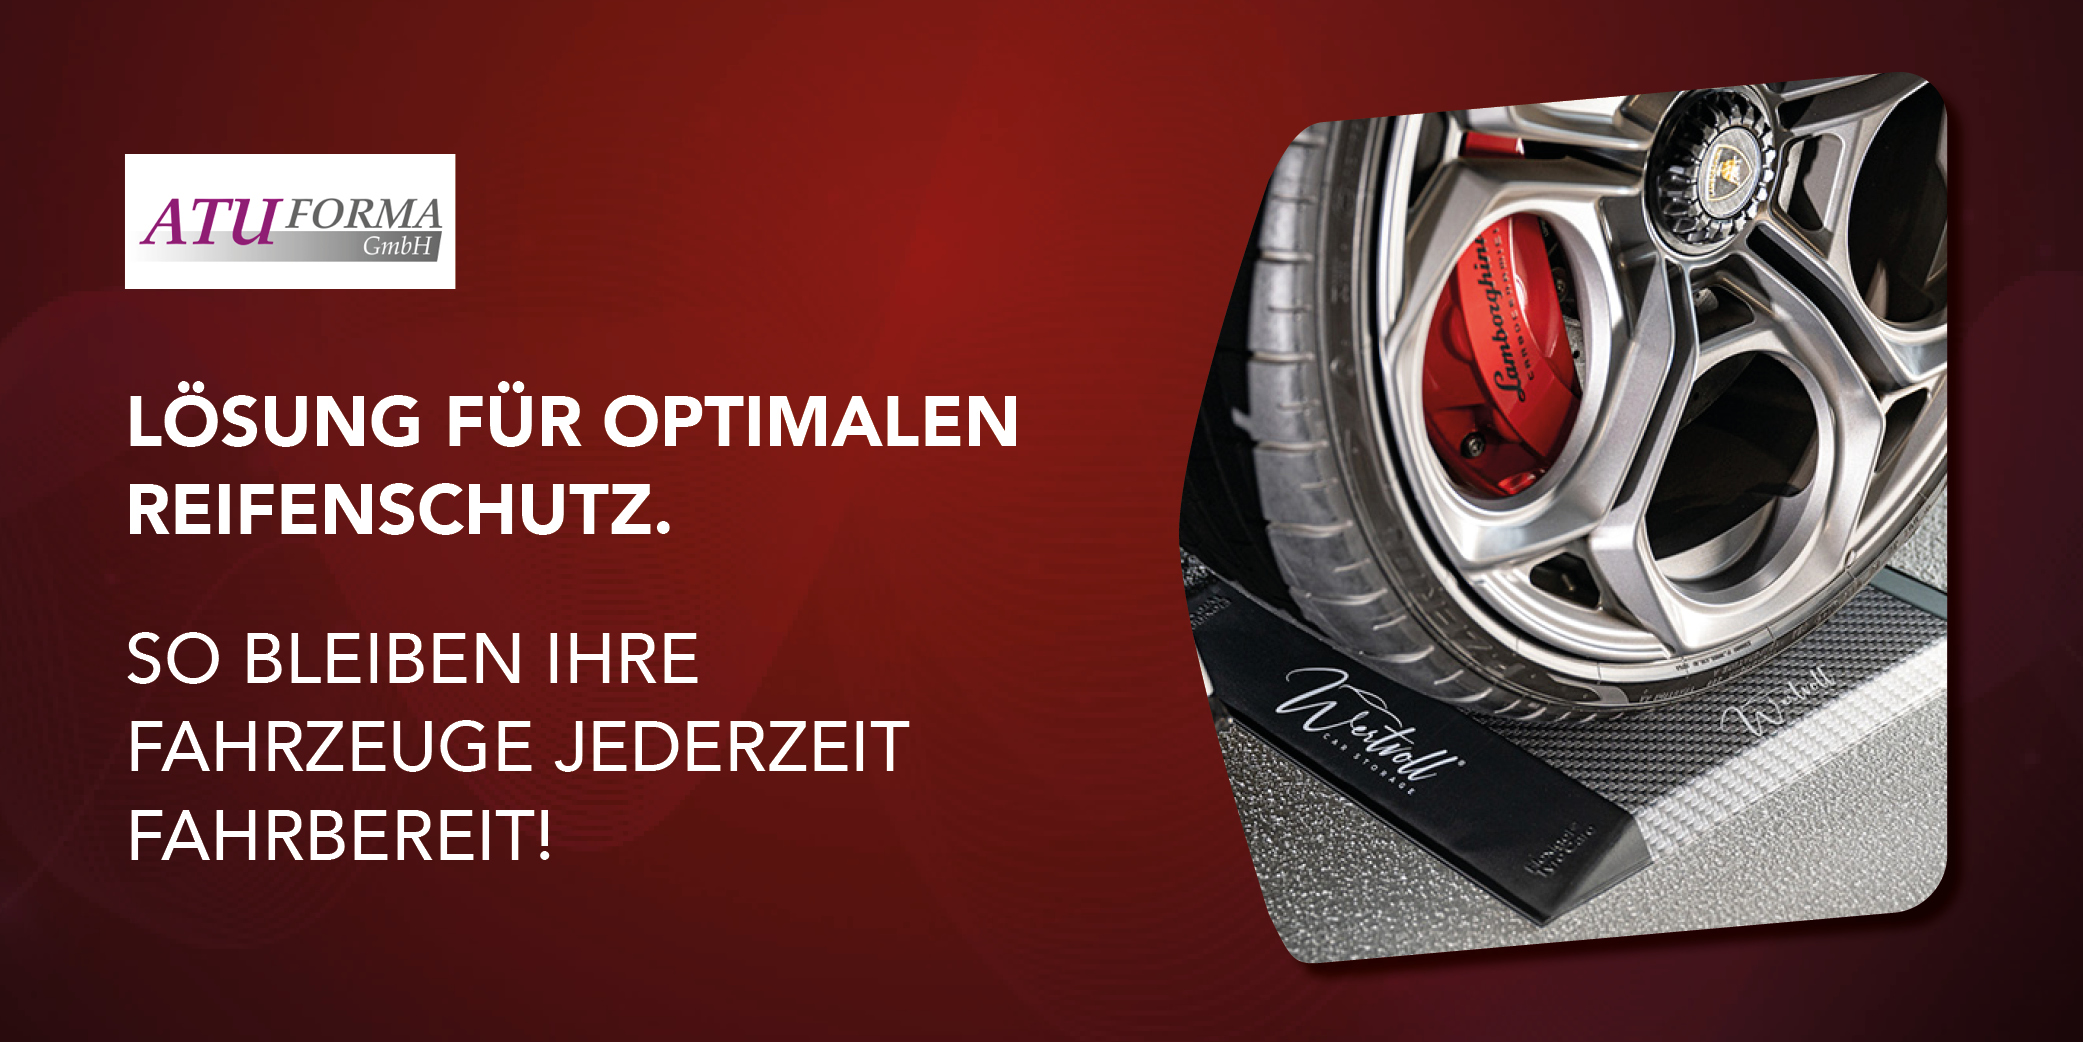 ATUFORMA – Flexigel Tyre Care – Optimaler Reifenschutz.